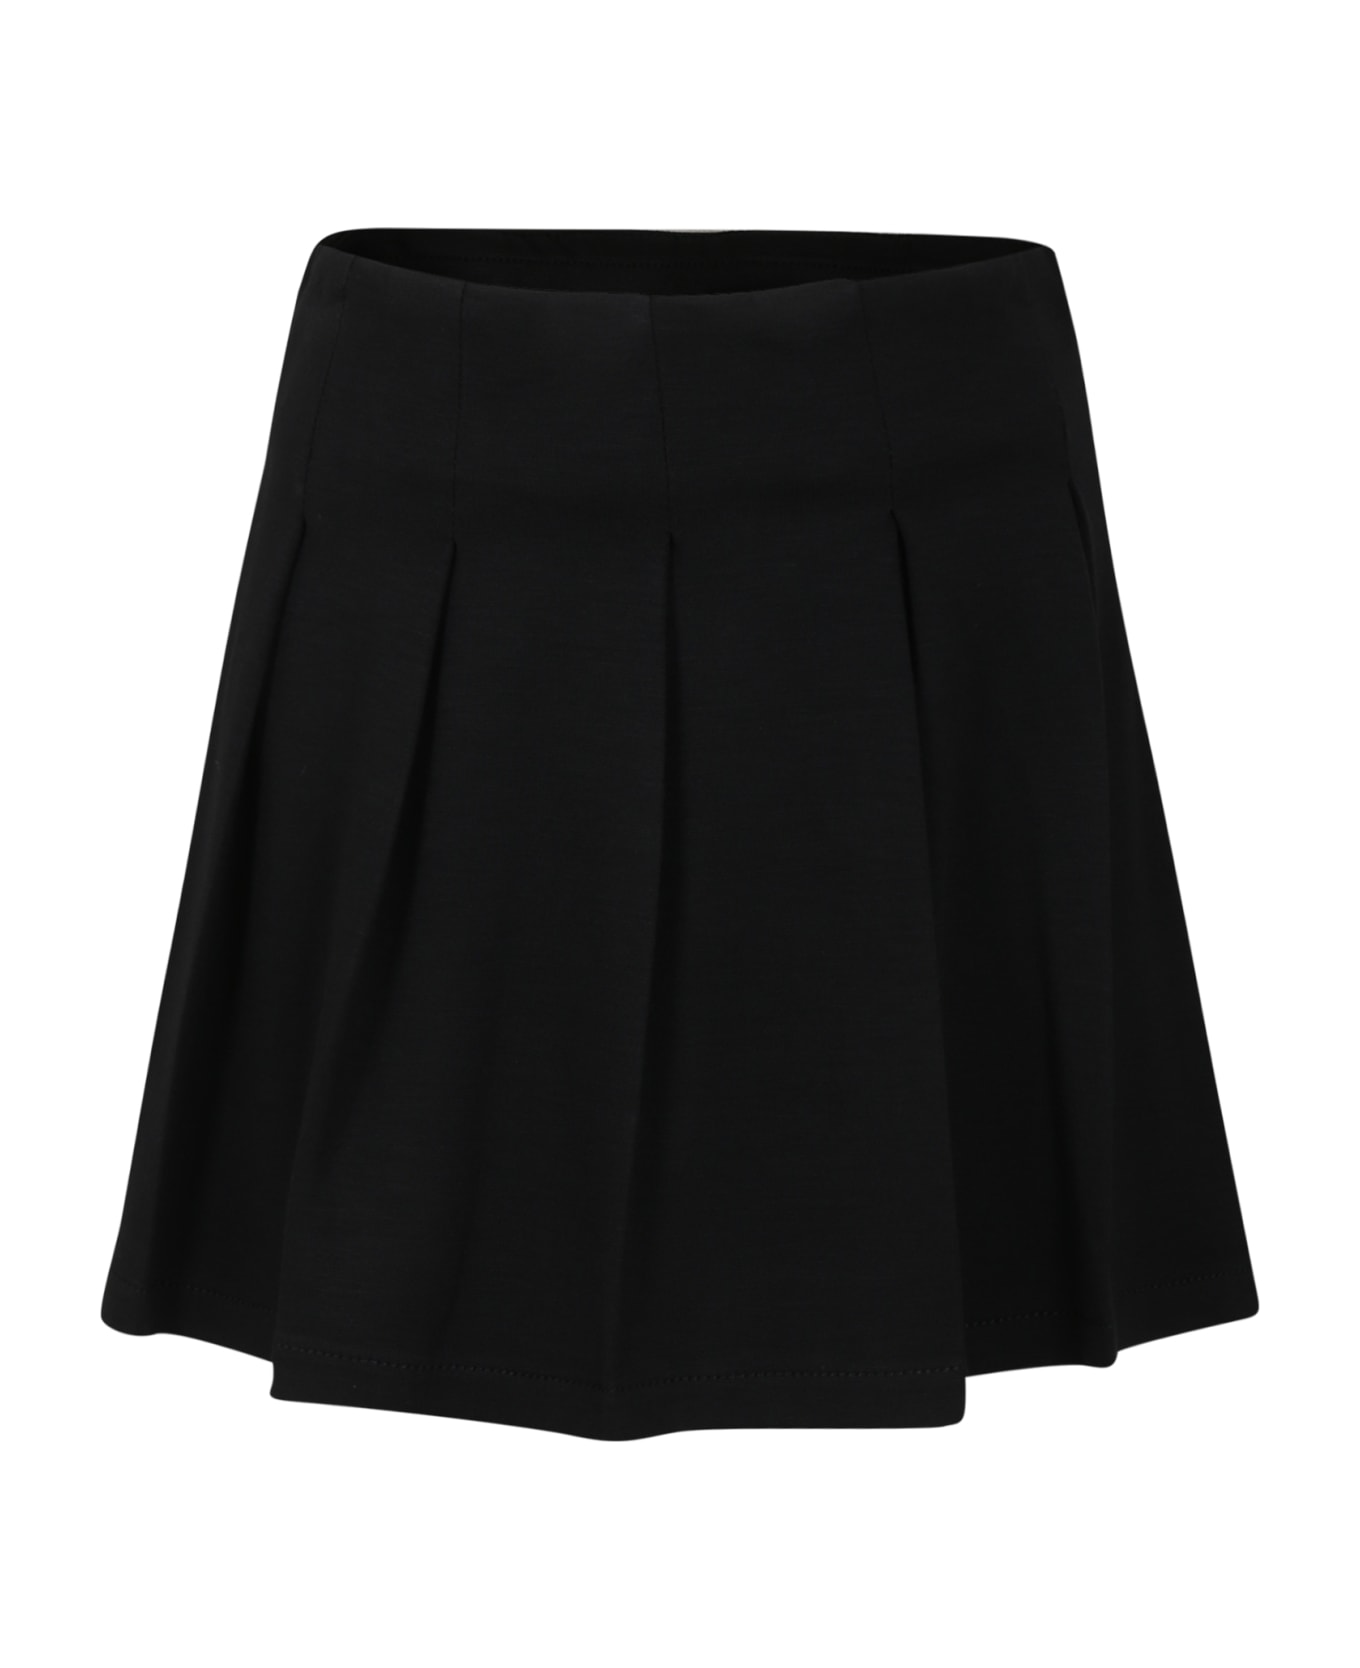 Philosophy di Lorenzo Serafini Kids Black Skirt For Girl With Heart - Black